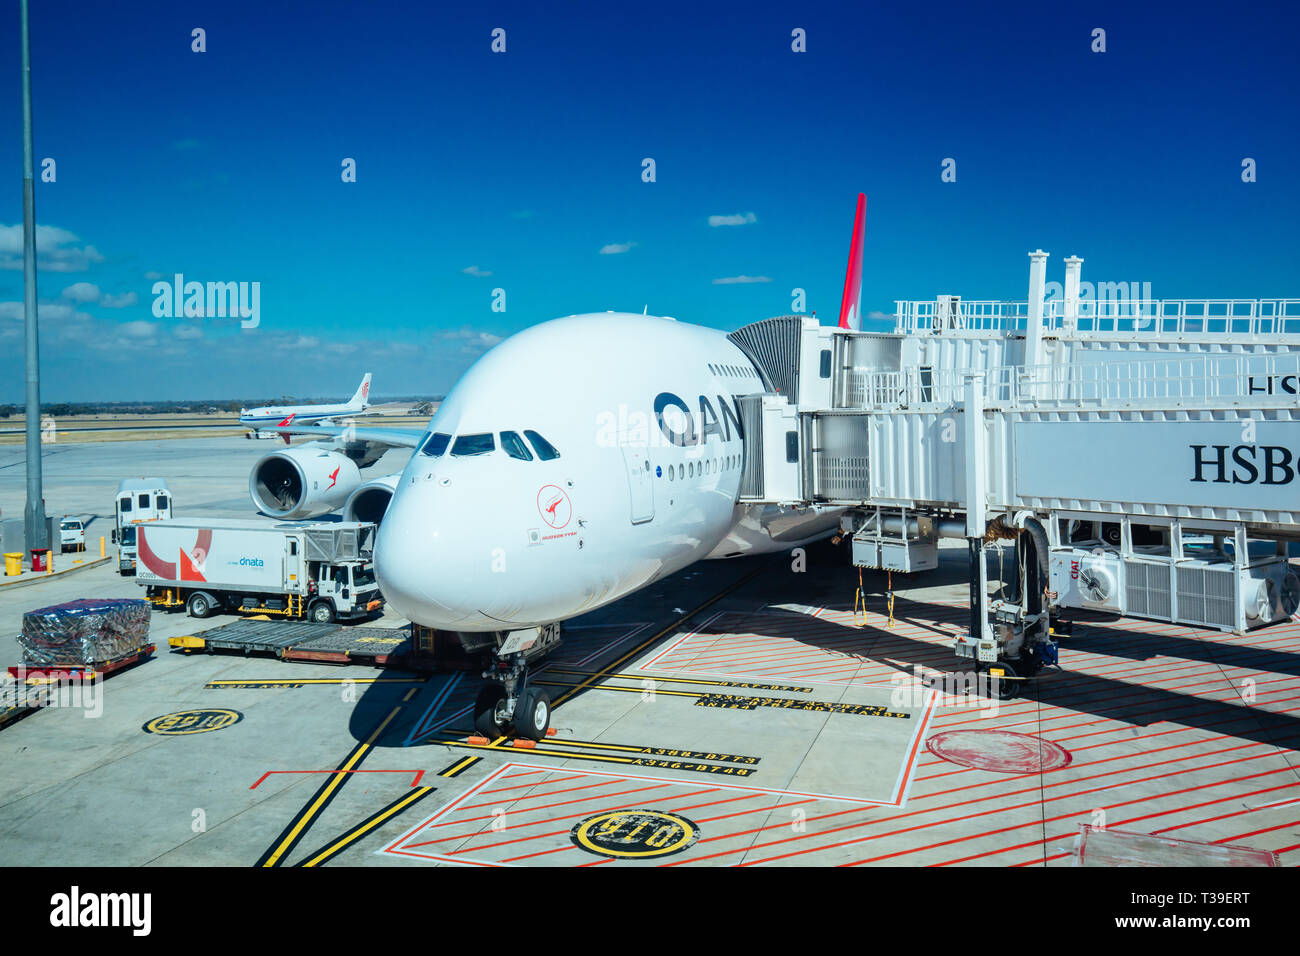 Melbourne, Australie - 18 mars 2019 : un avion A380 de Qantas dans sa baie à l'aéroport Tullamarine de Melbourne à Victoria, Australie Banque D'Images